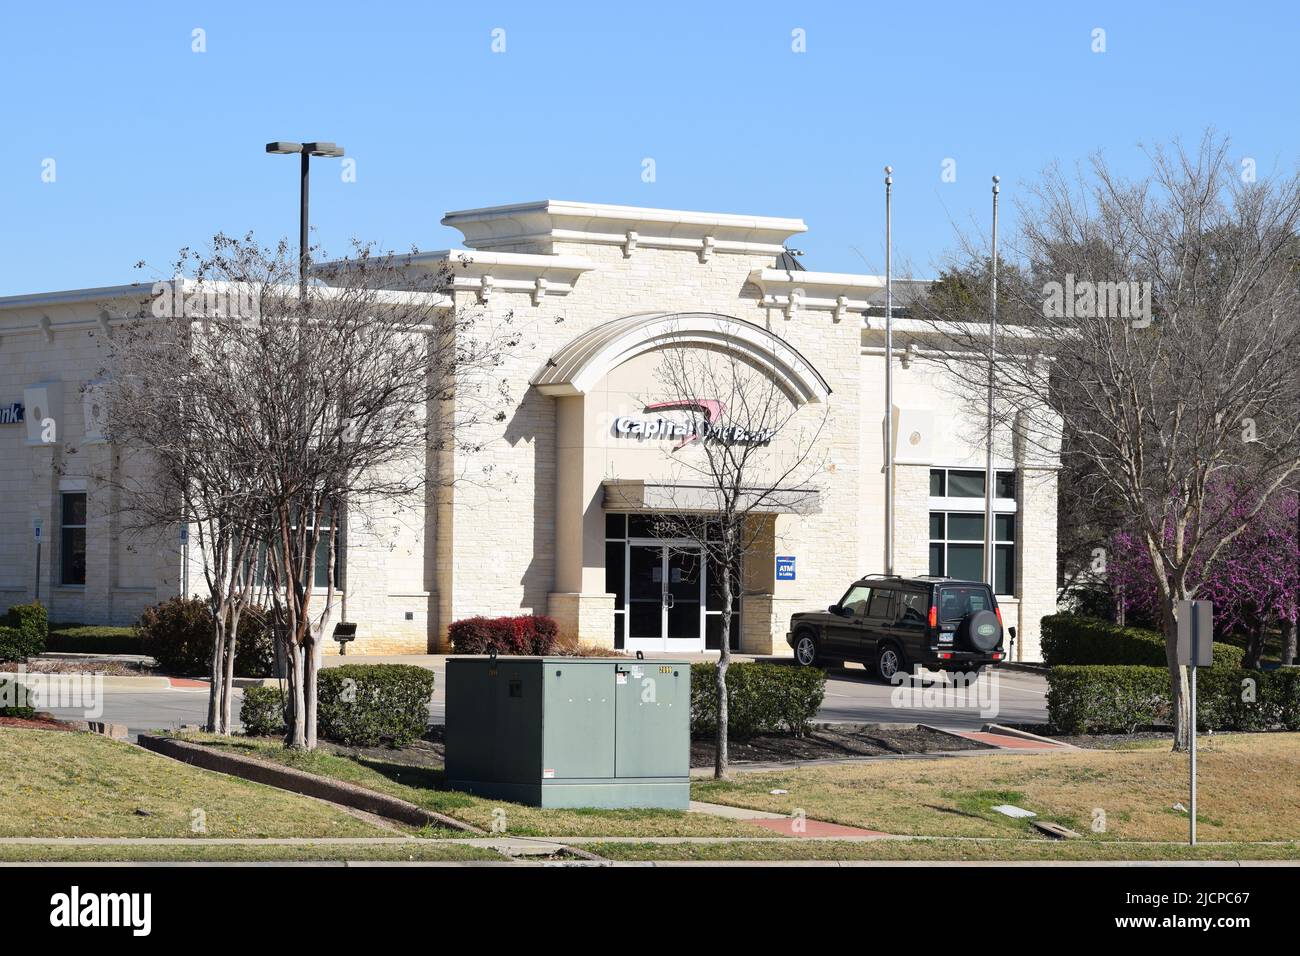 Un todoterreno Land Rover Discovery aparcado frente a un edificio del Capital One Bank en Irving, Texas Foto de stock